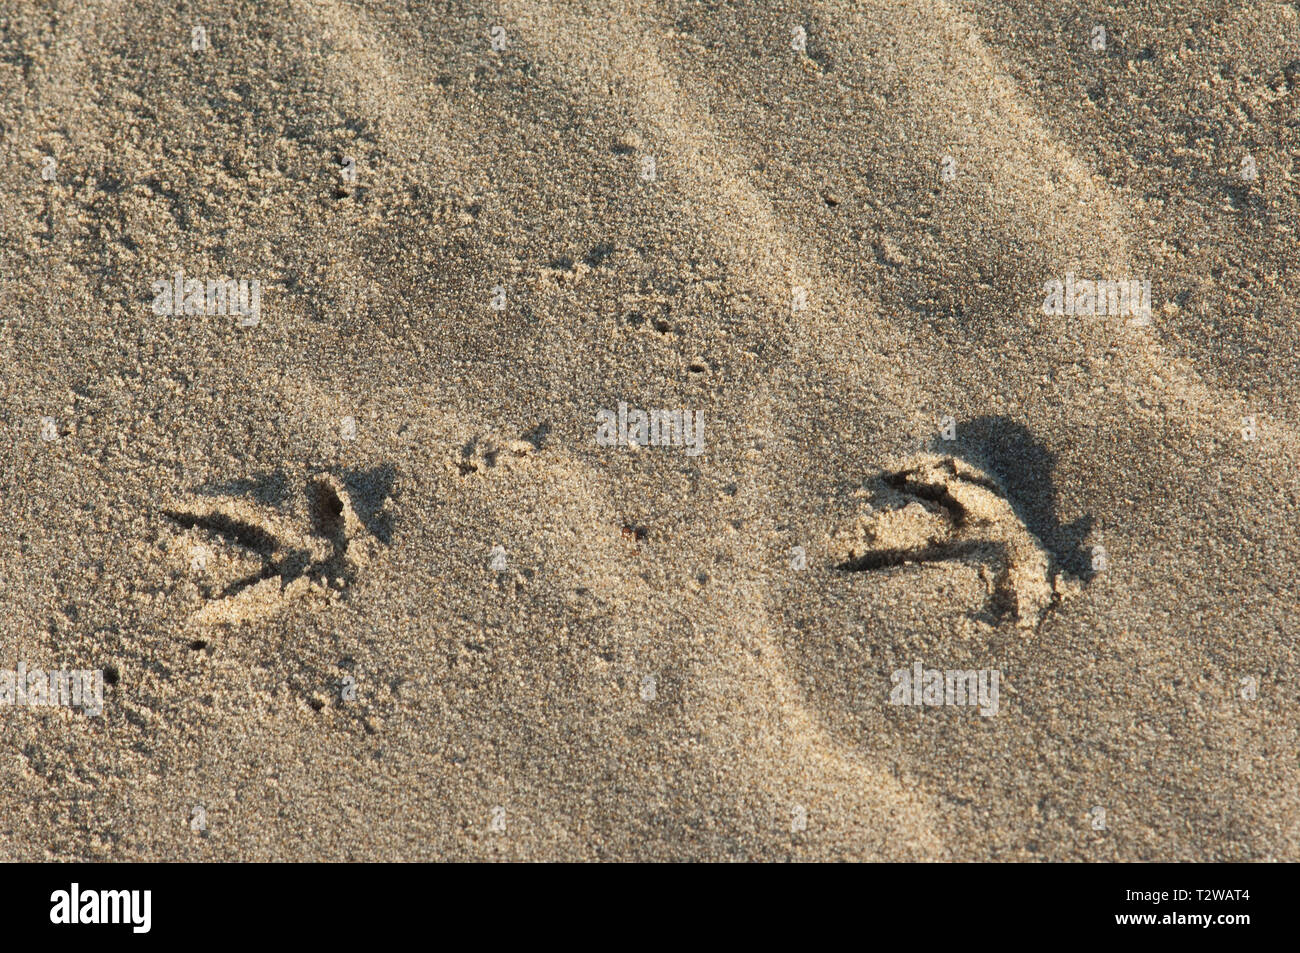 Les pistes d'oiseaux dans le sable à la plage de surf près de Lompoc, en Californie centrale côte. Photographie numérique Banque D'Images